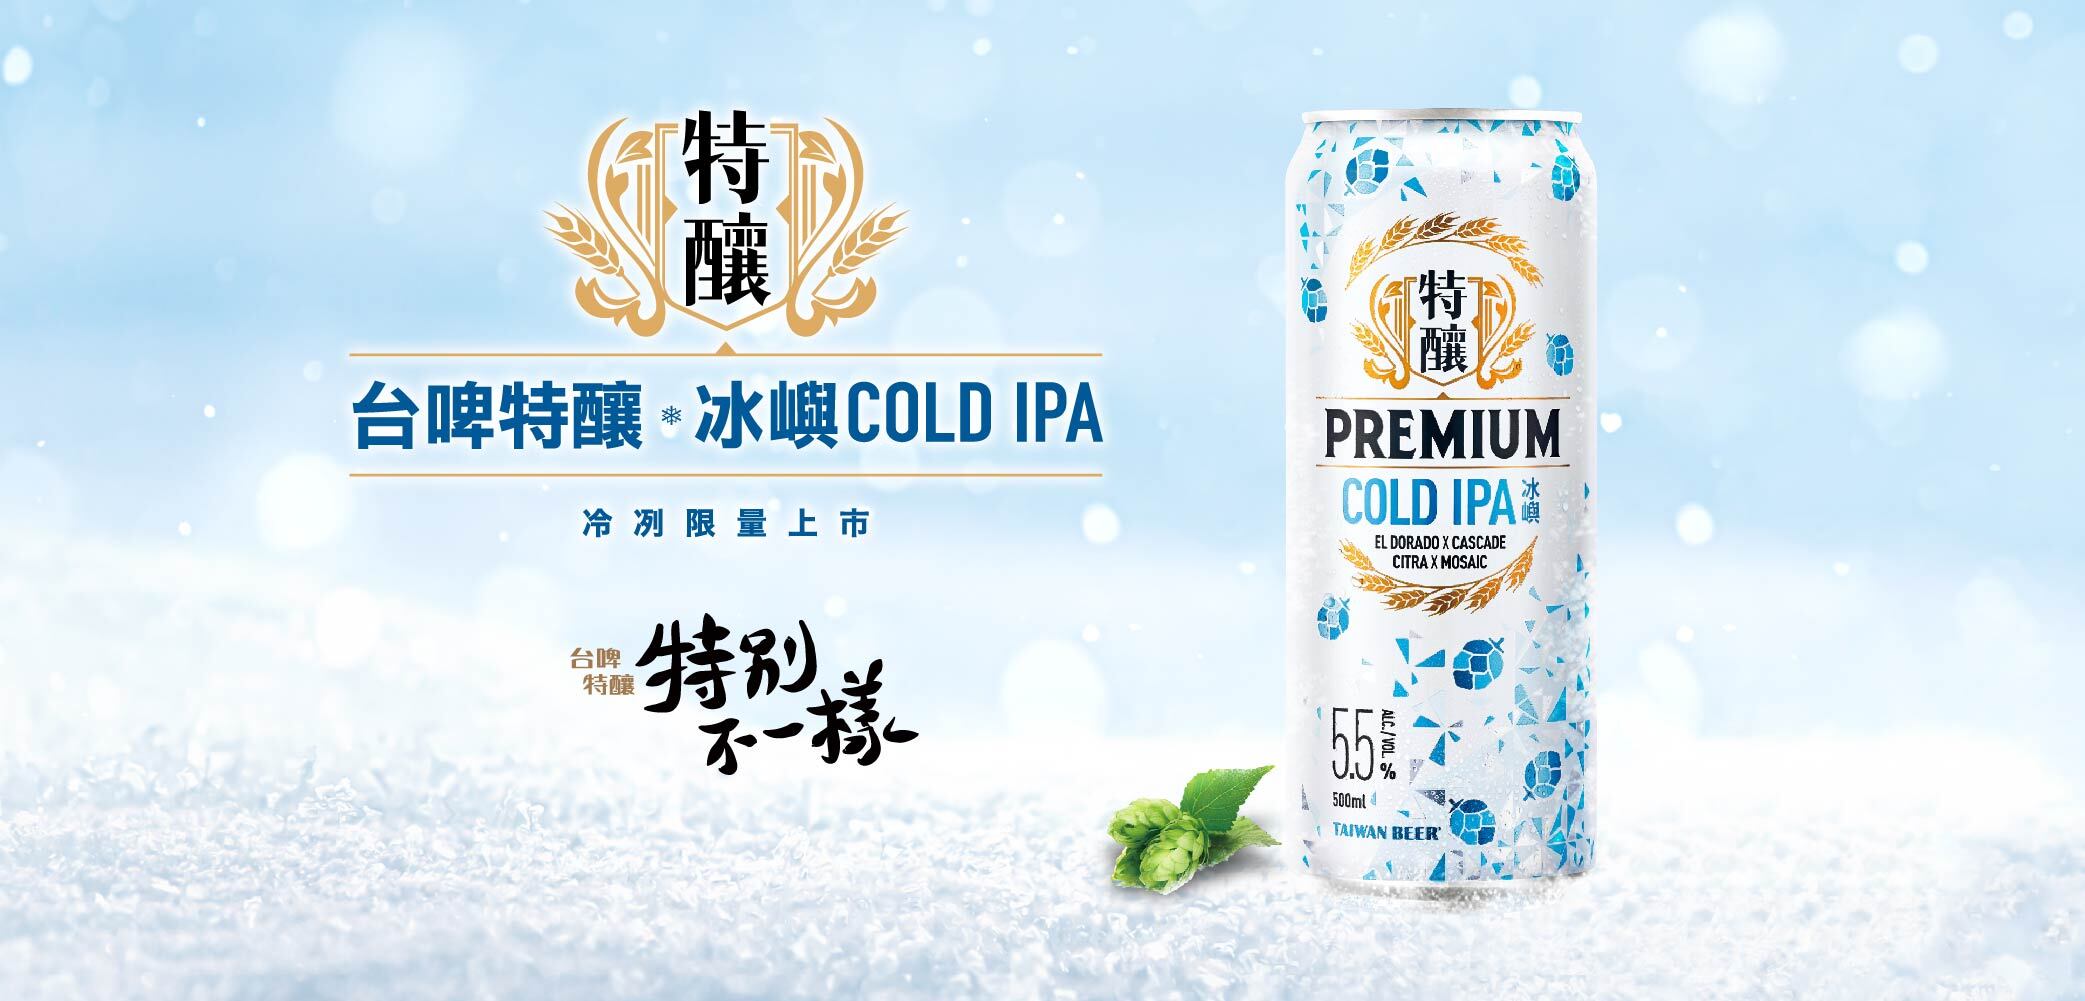 台啤特釀最新力作！具有獨特酒花個性的「冰嶼COLD IPA」冷冽登場